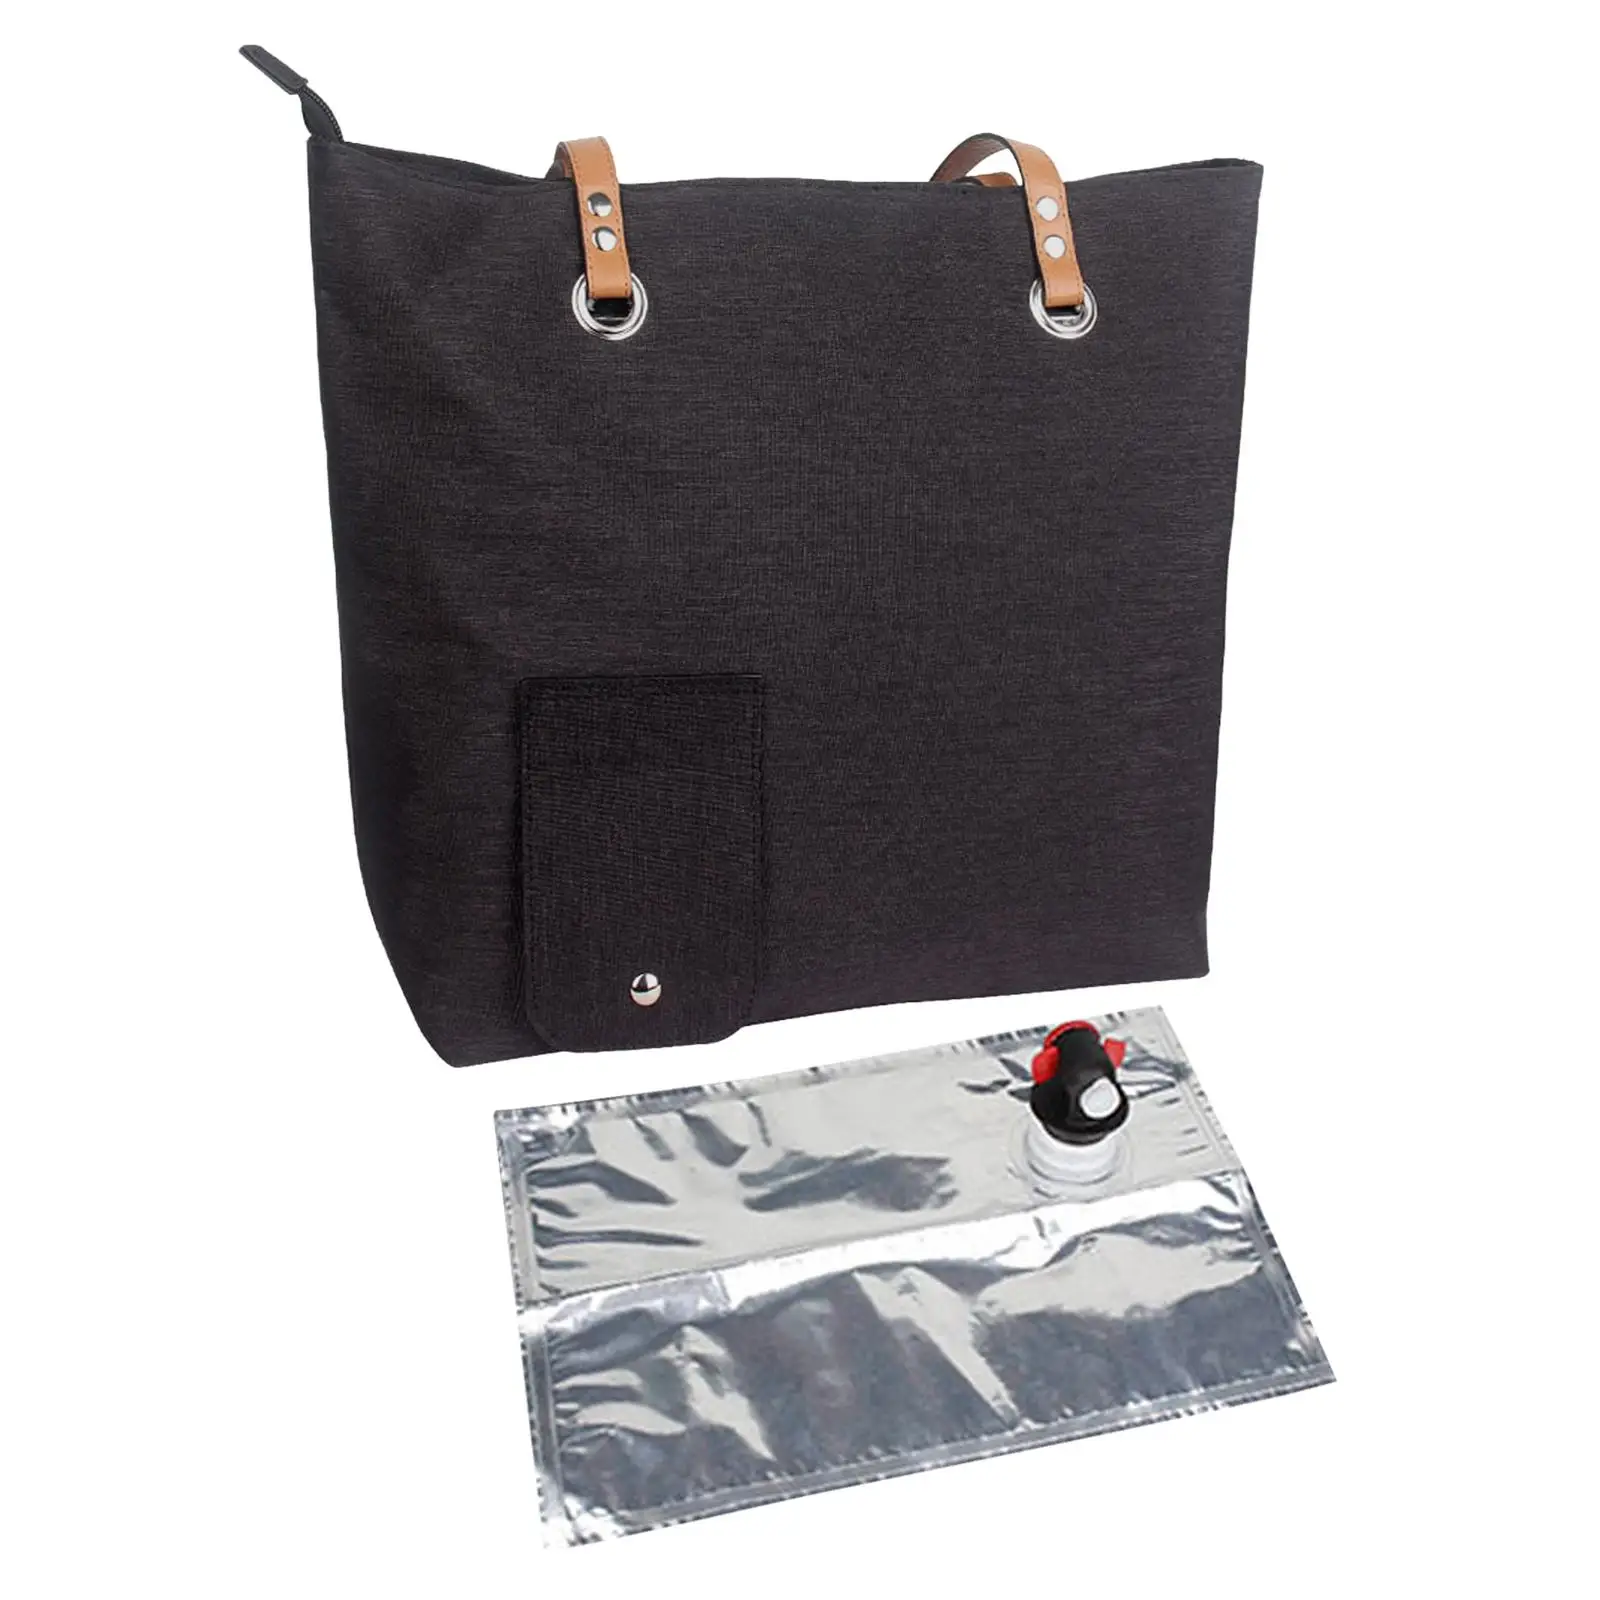 Insulated Cooler Bag Travel Beverage Handbag Water Cooler Bag Shoulder Bag for Camping Fishing